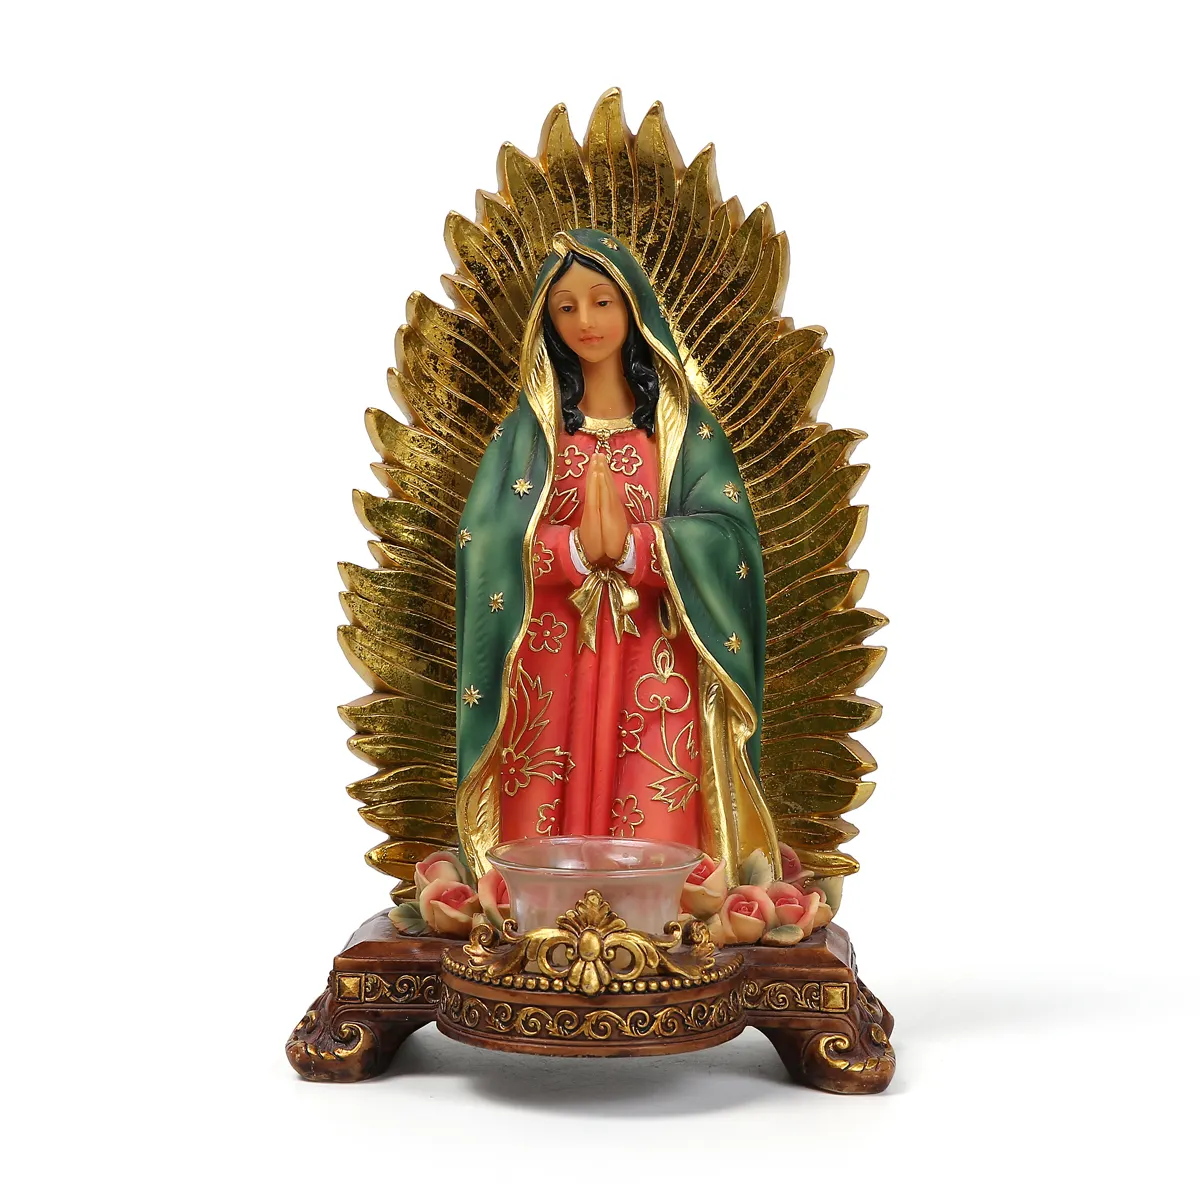 Iglesia de resina personalizada, decoración del hogar, escultura religiosa católica, estatua de Nuestra Señora de Guadalupe, portavelas